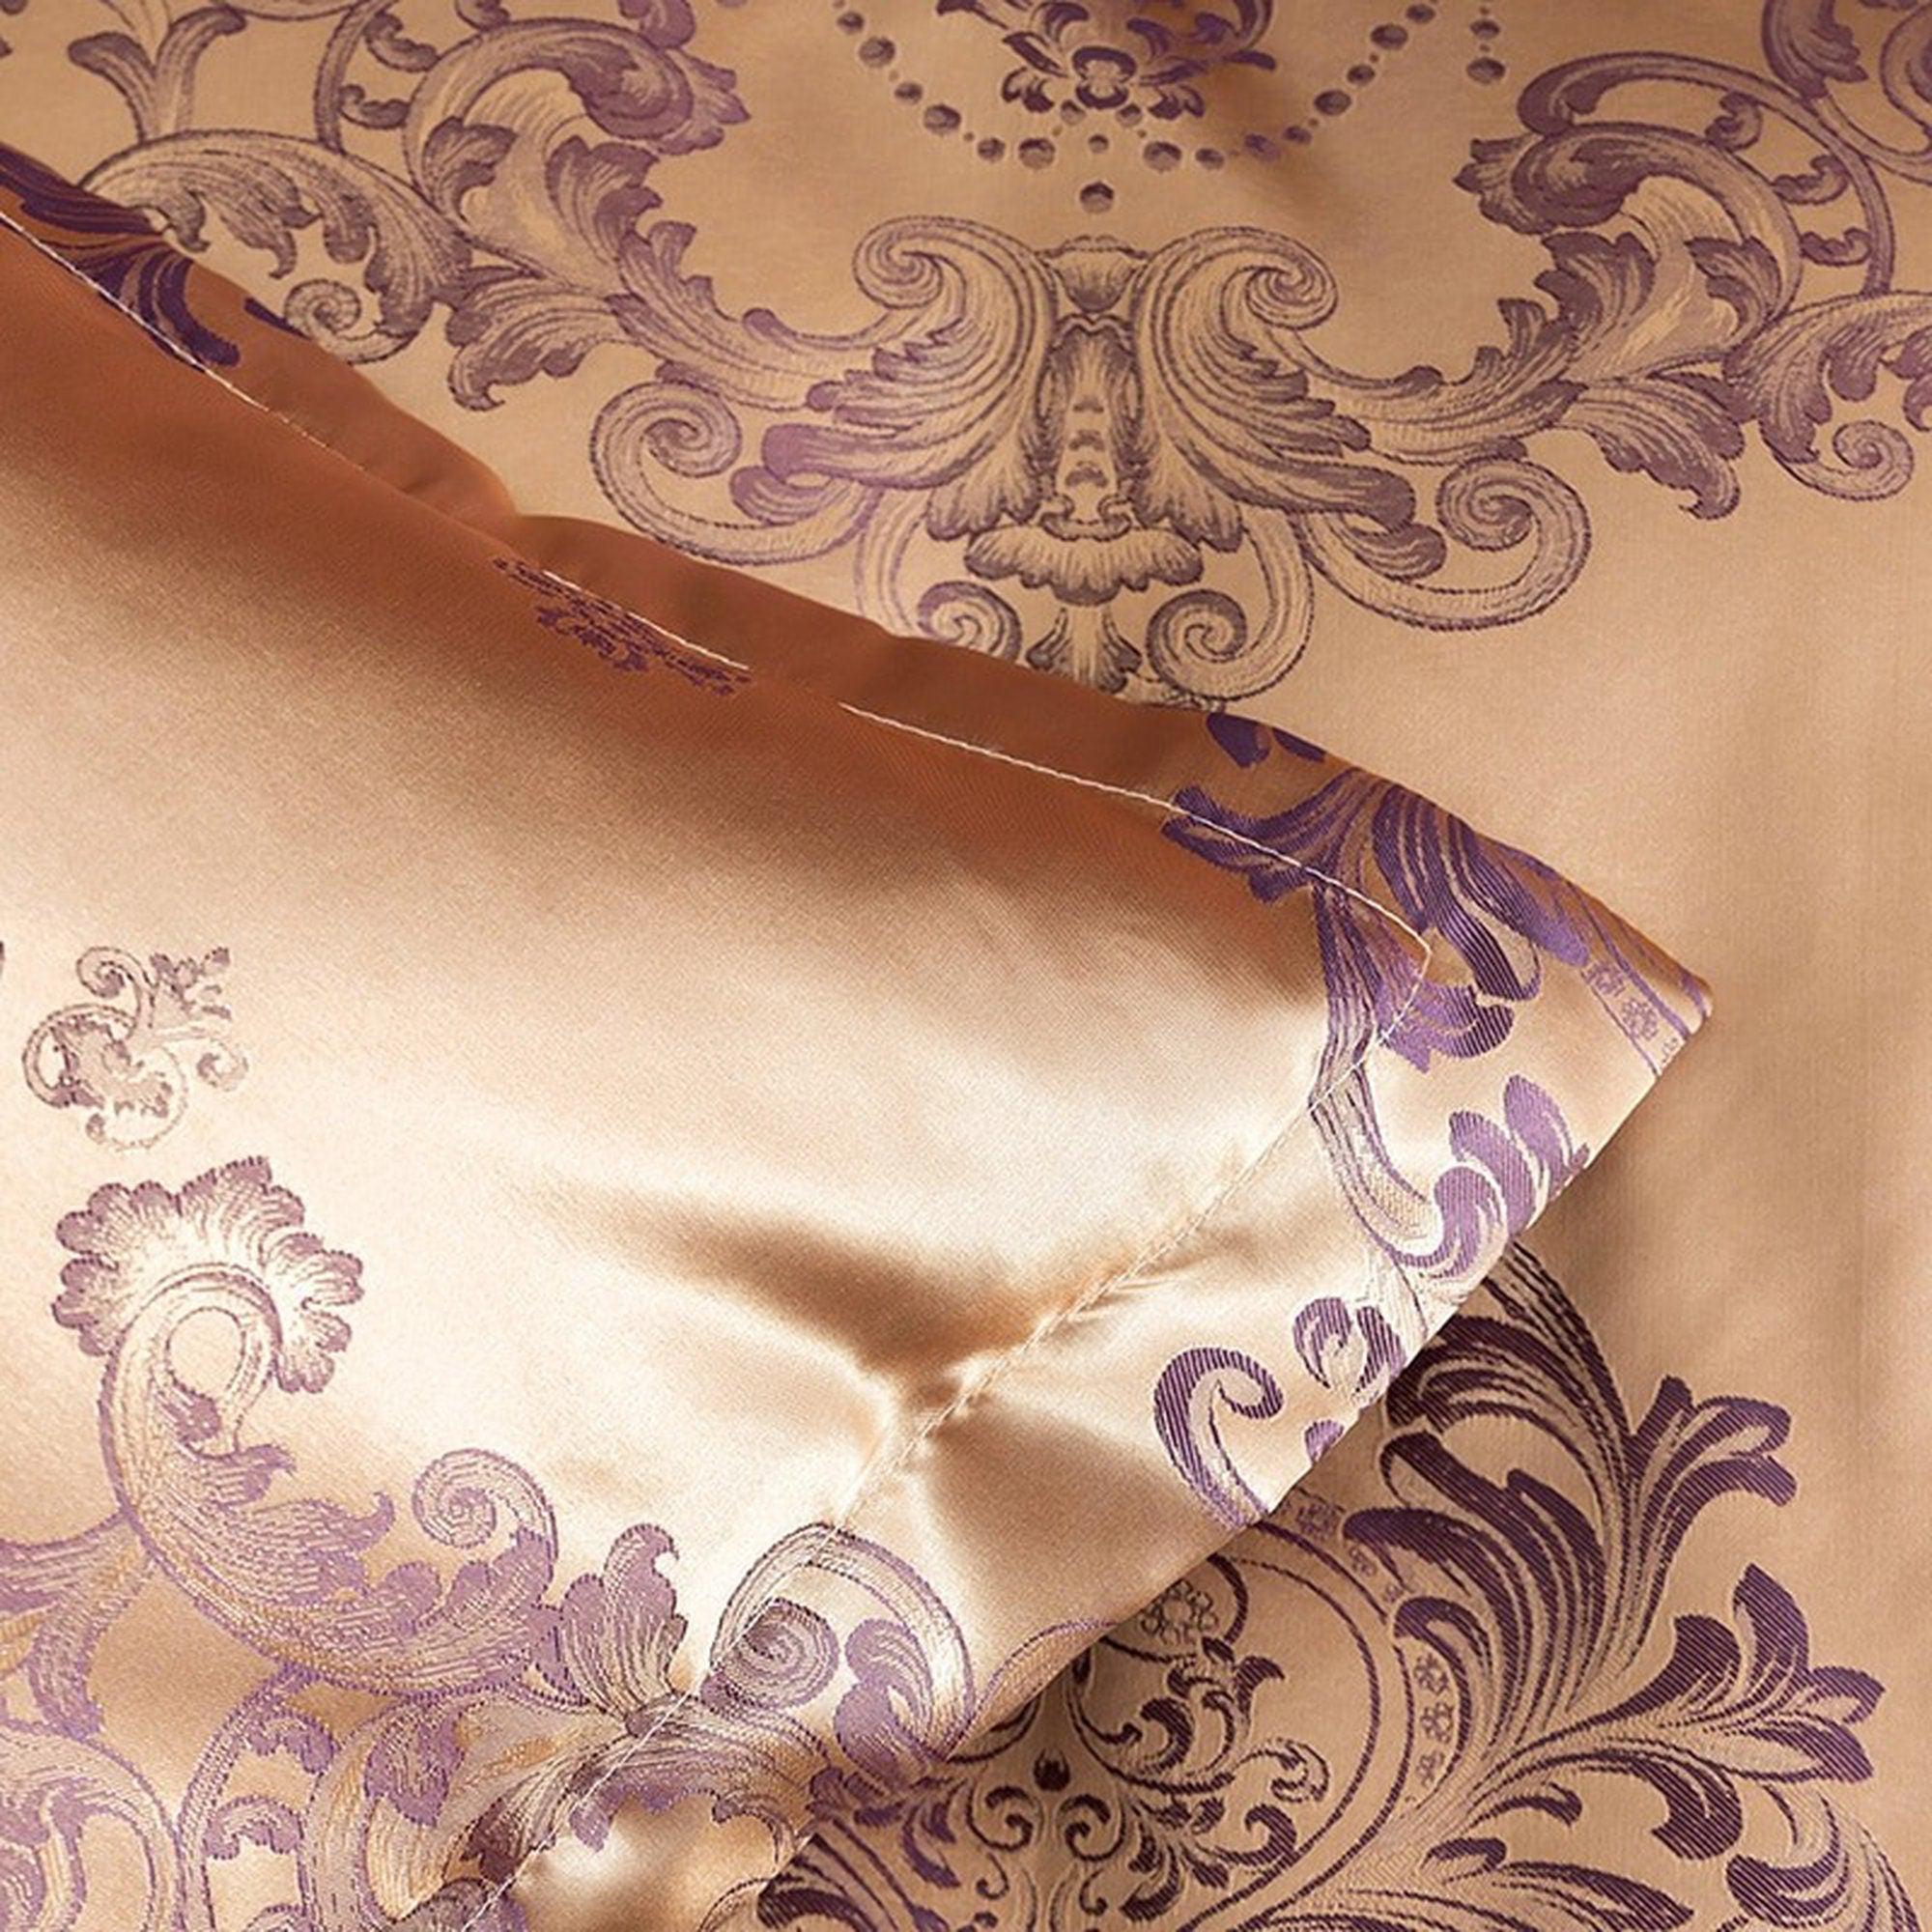 daintyduvet Luxury Rose Gold Pink Bedding made with Silky Jacquard Fabric, Damask Duvet Cover Set, Designer Bedding, Aesthetic Duvet King Queen Full